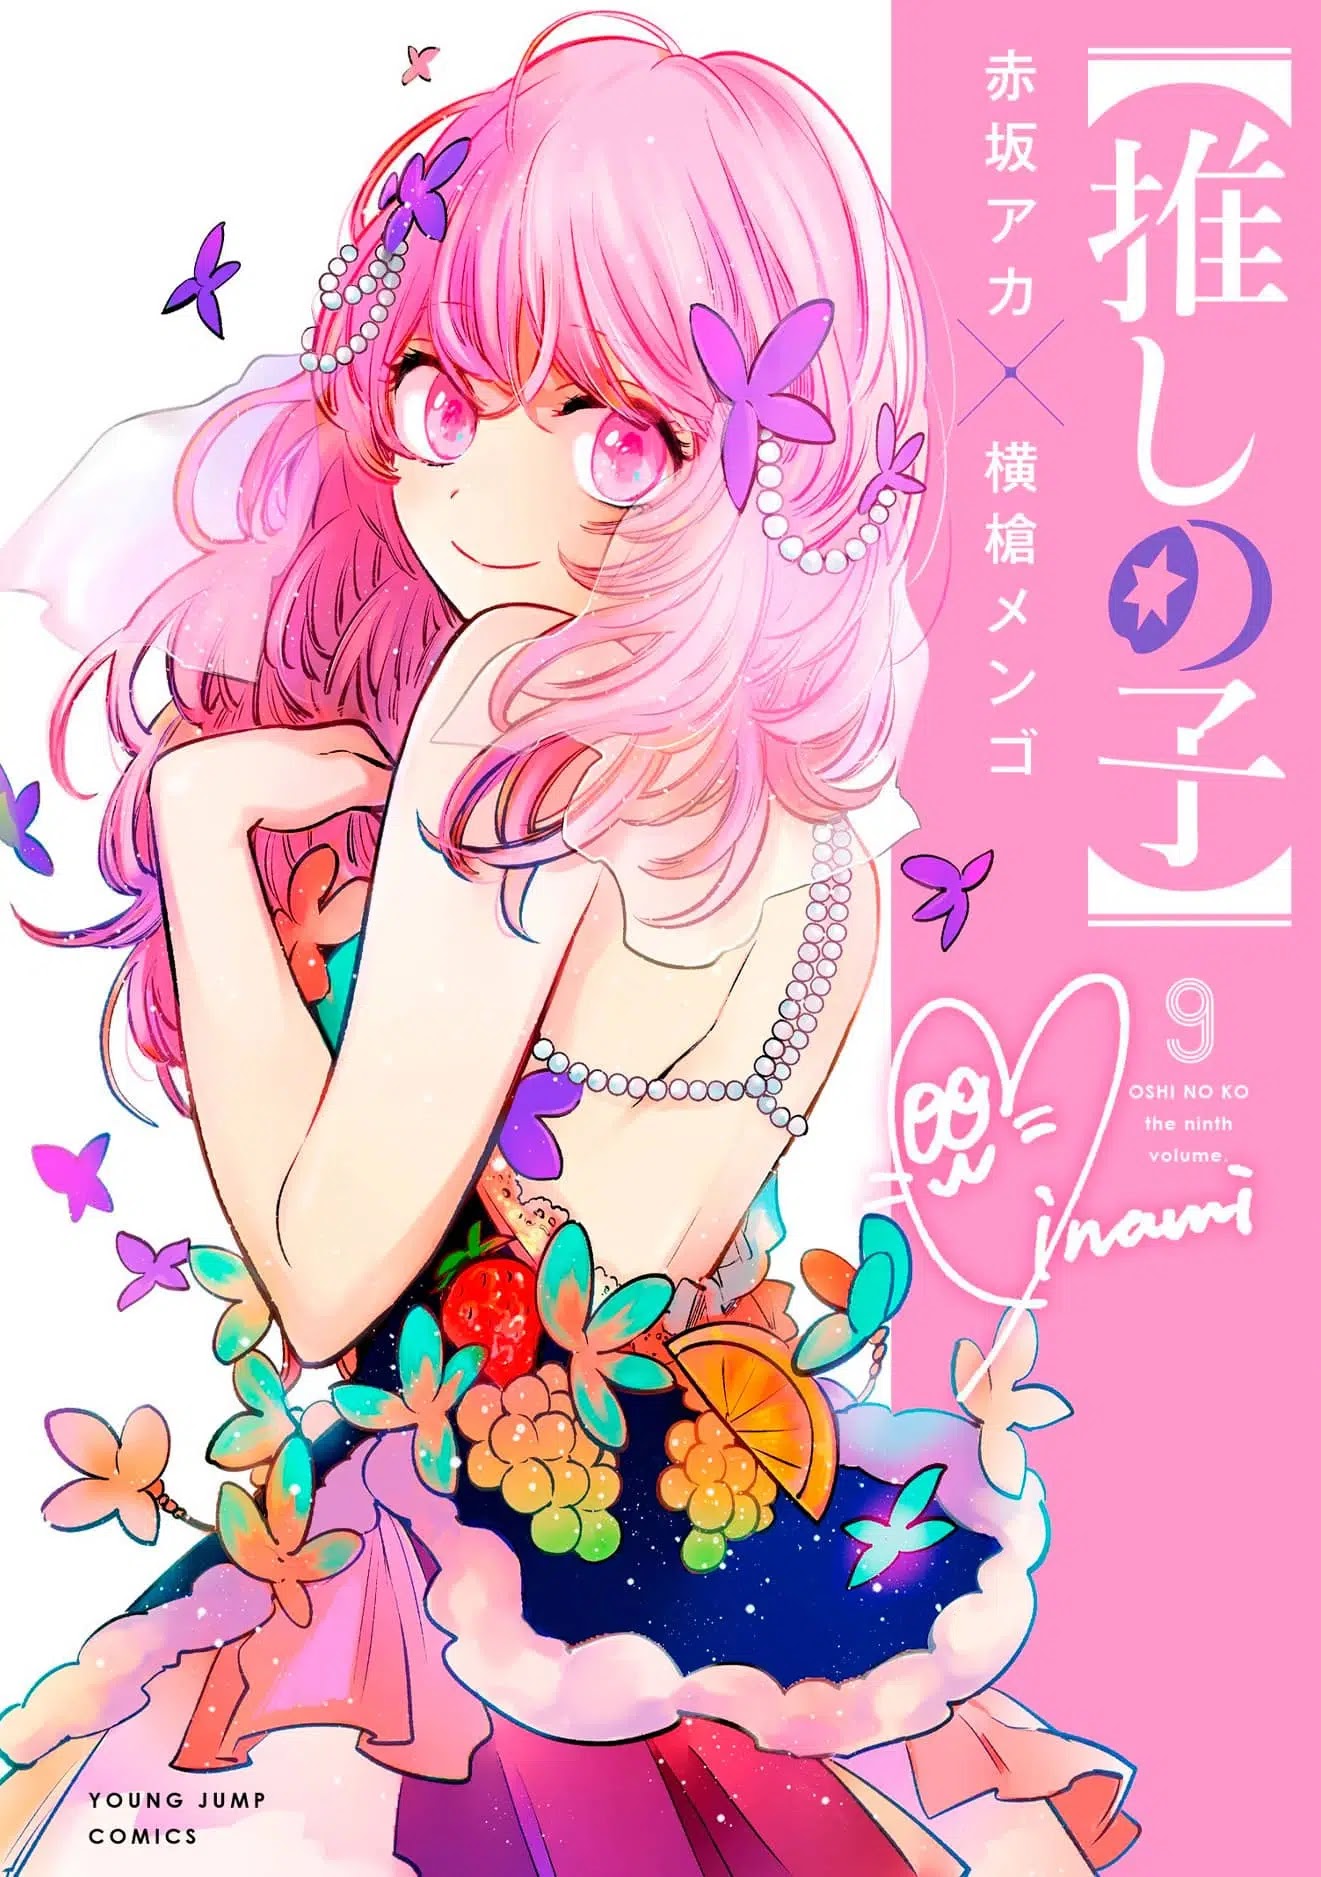 El manga Oshi no Ko revelo la portada de su volumen #9